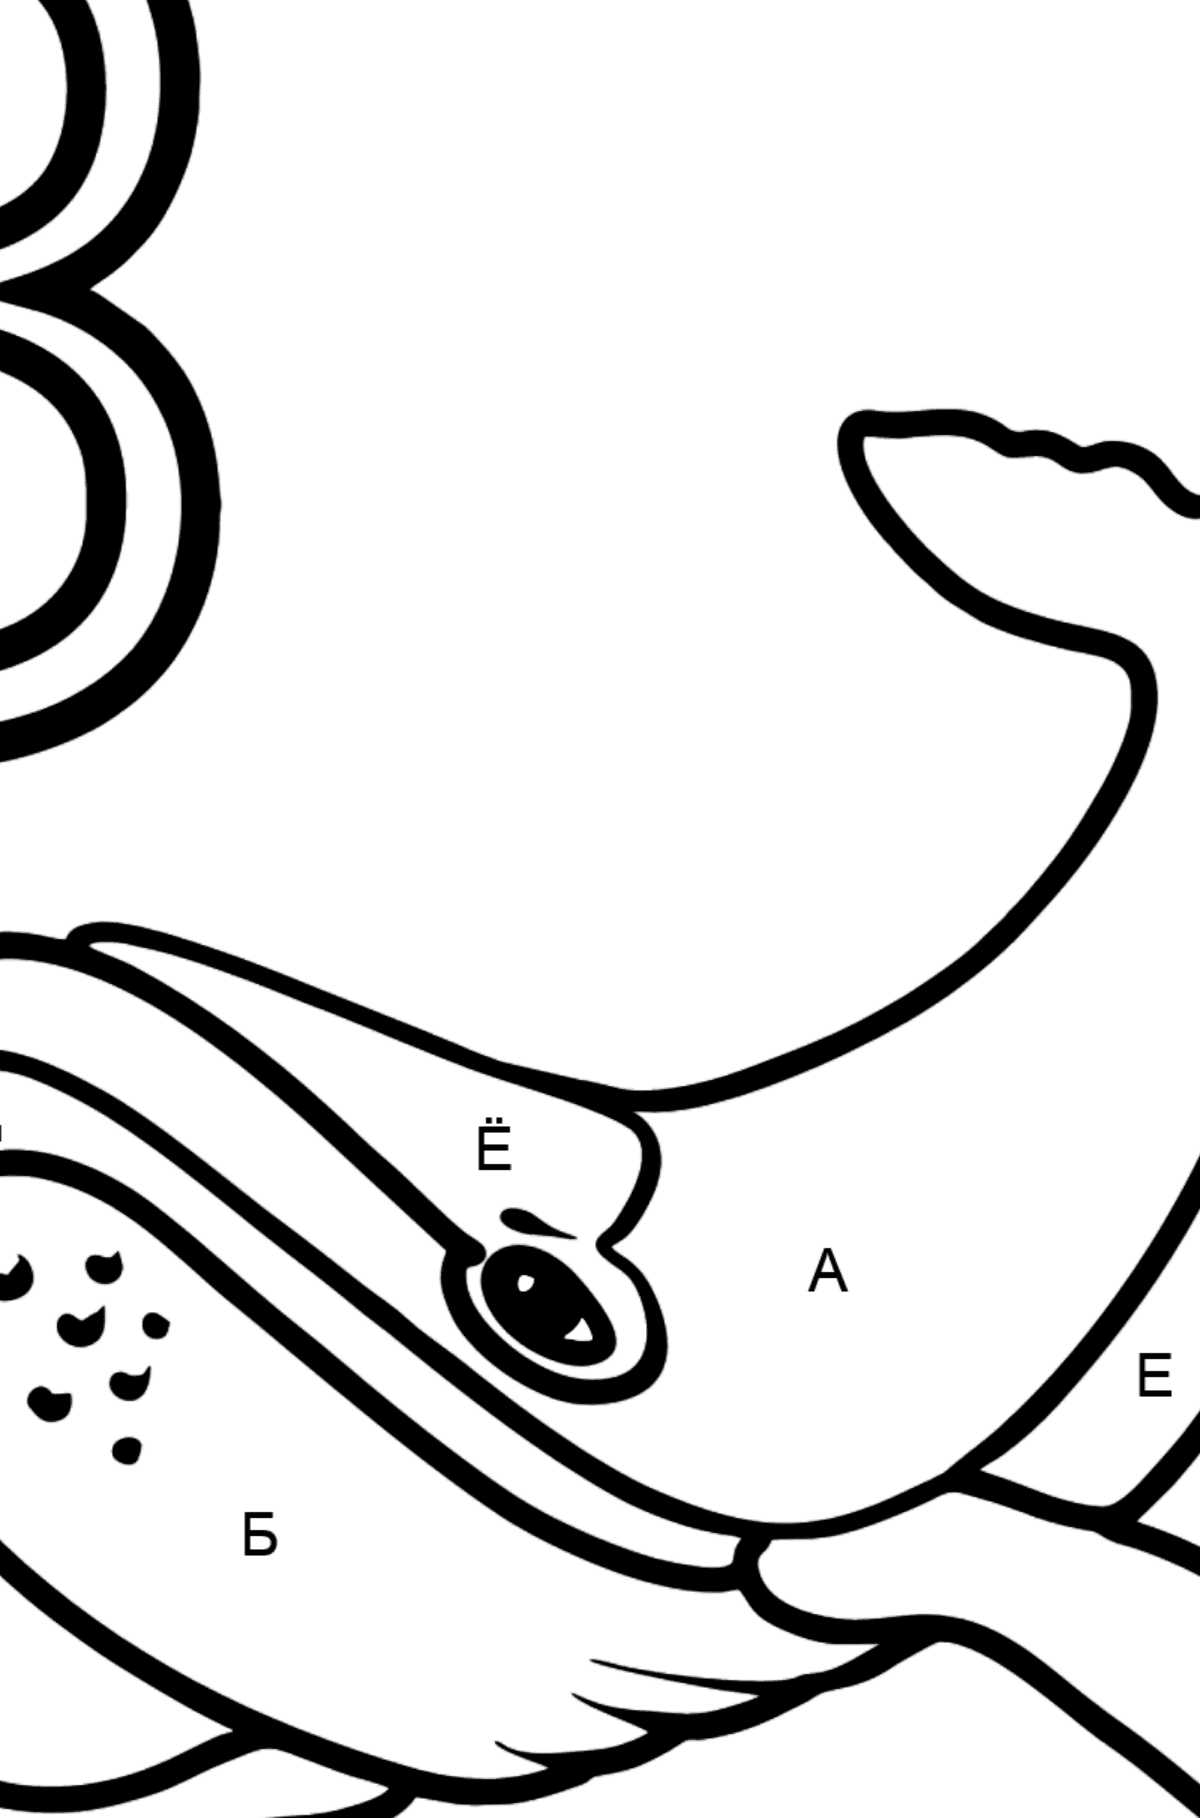 Раскраска Буква B - португальский алфавит - BALEIA - По Буквам для Детей